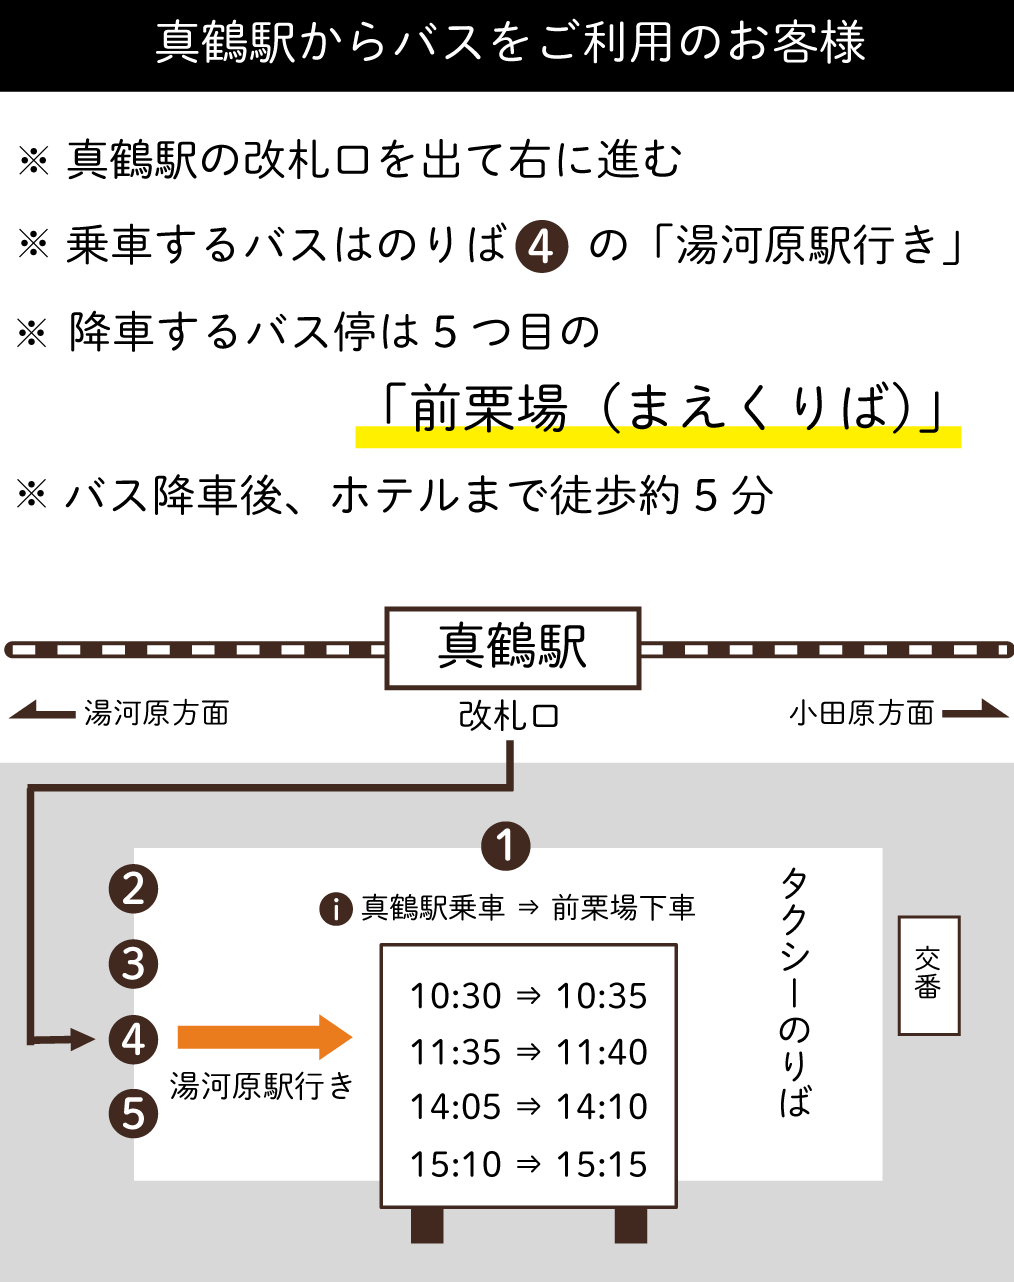 湯河原 真鶴駅 アクセス情報 マップ